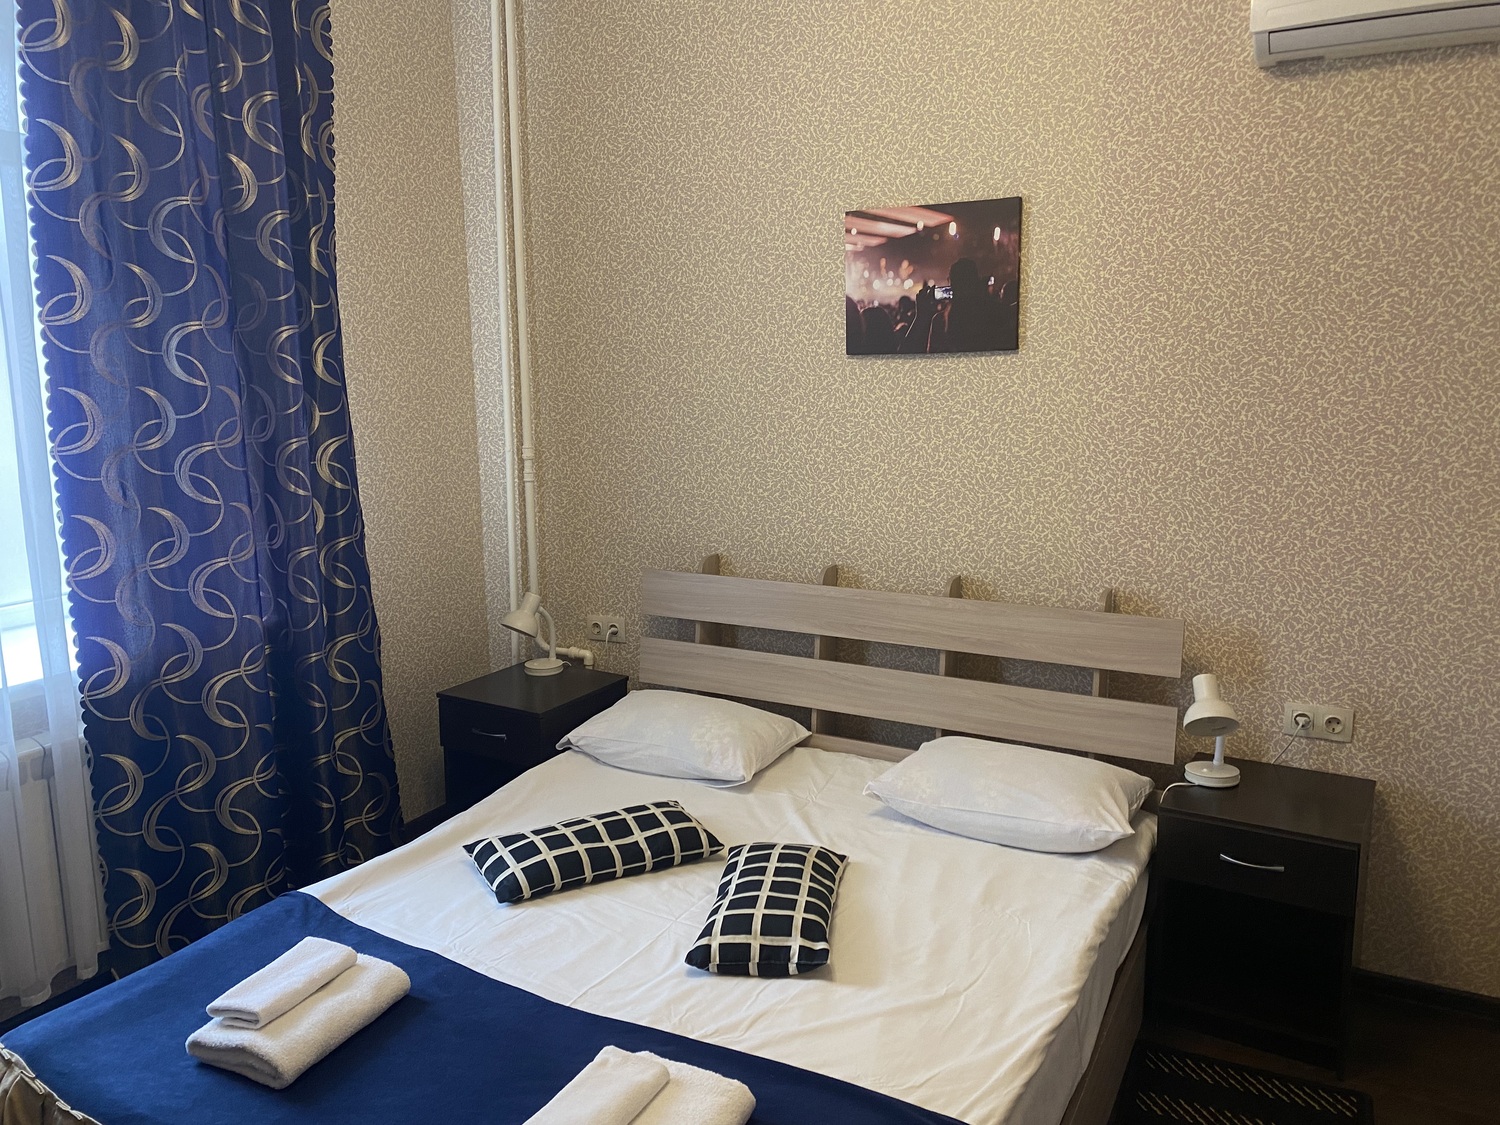 Место расположения гостиницы делает ее удобной для проживания гостей Столицы. 